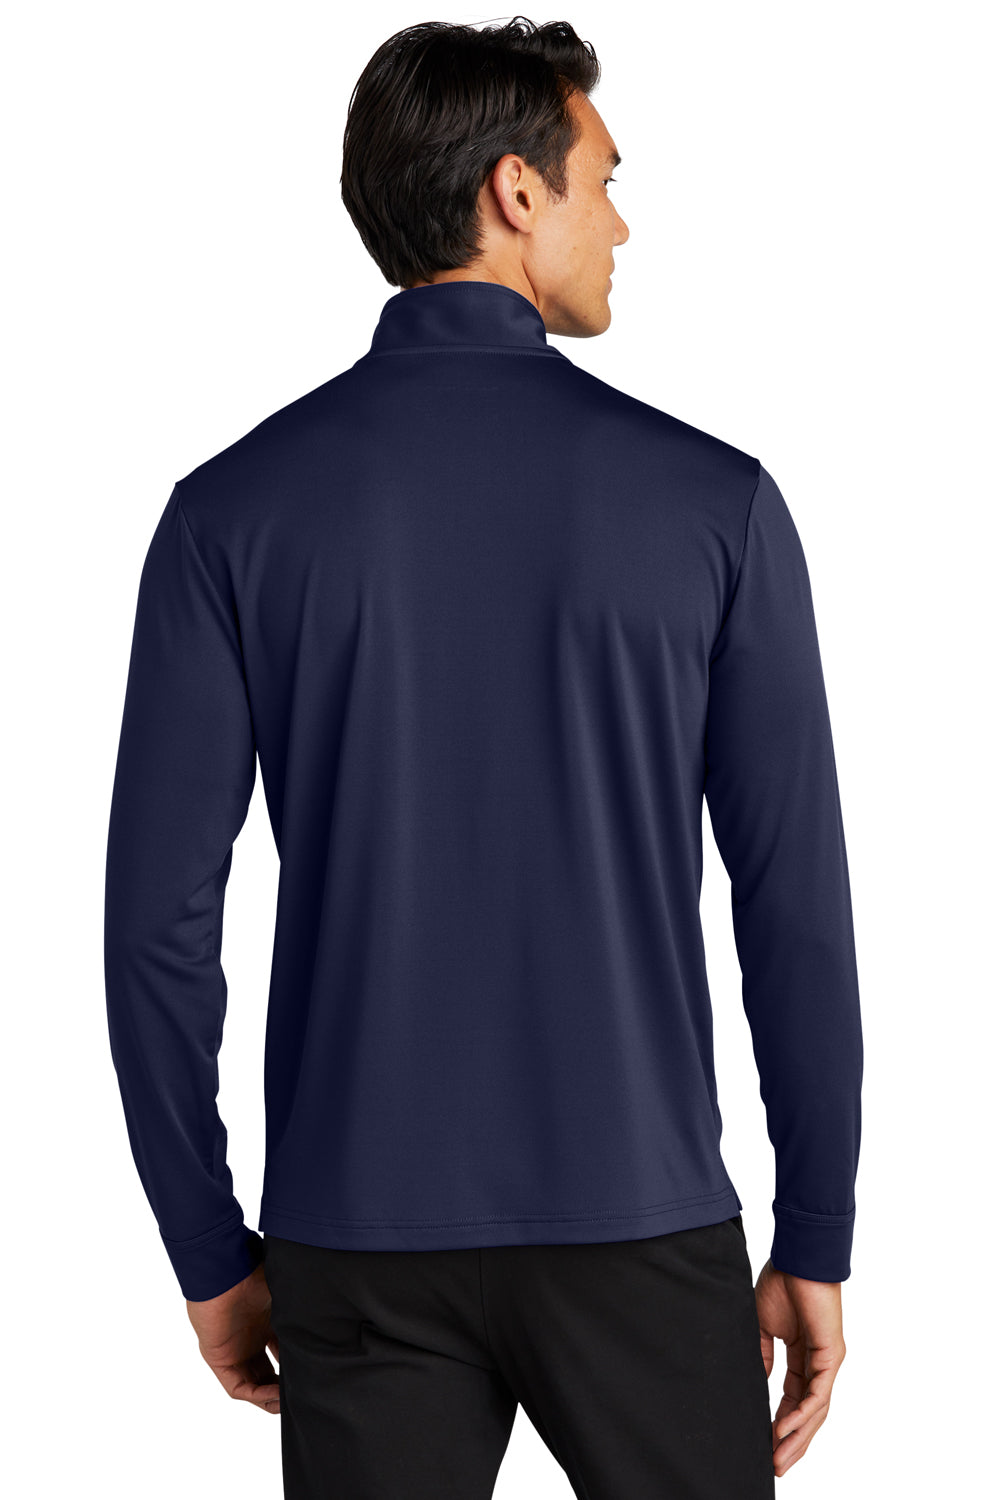 Port Authority K865 C-Free 1/4 Zip Sweatshirt True Navy Blue Back